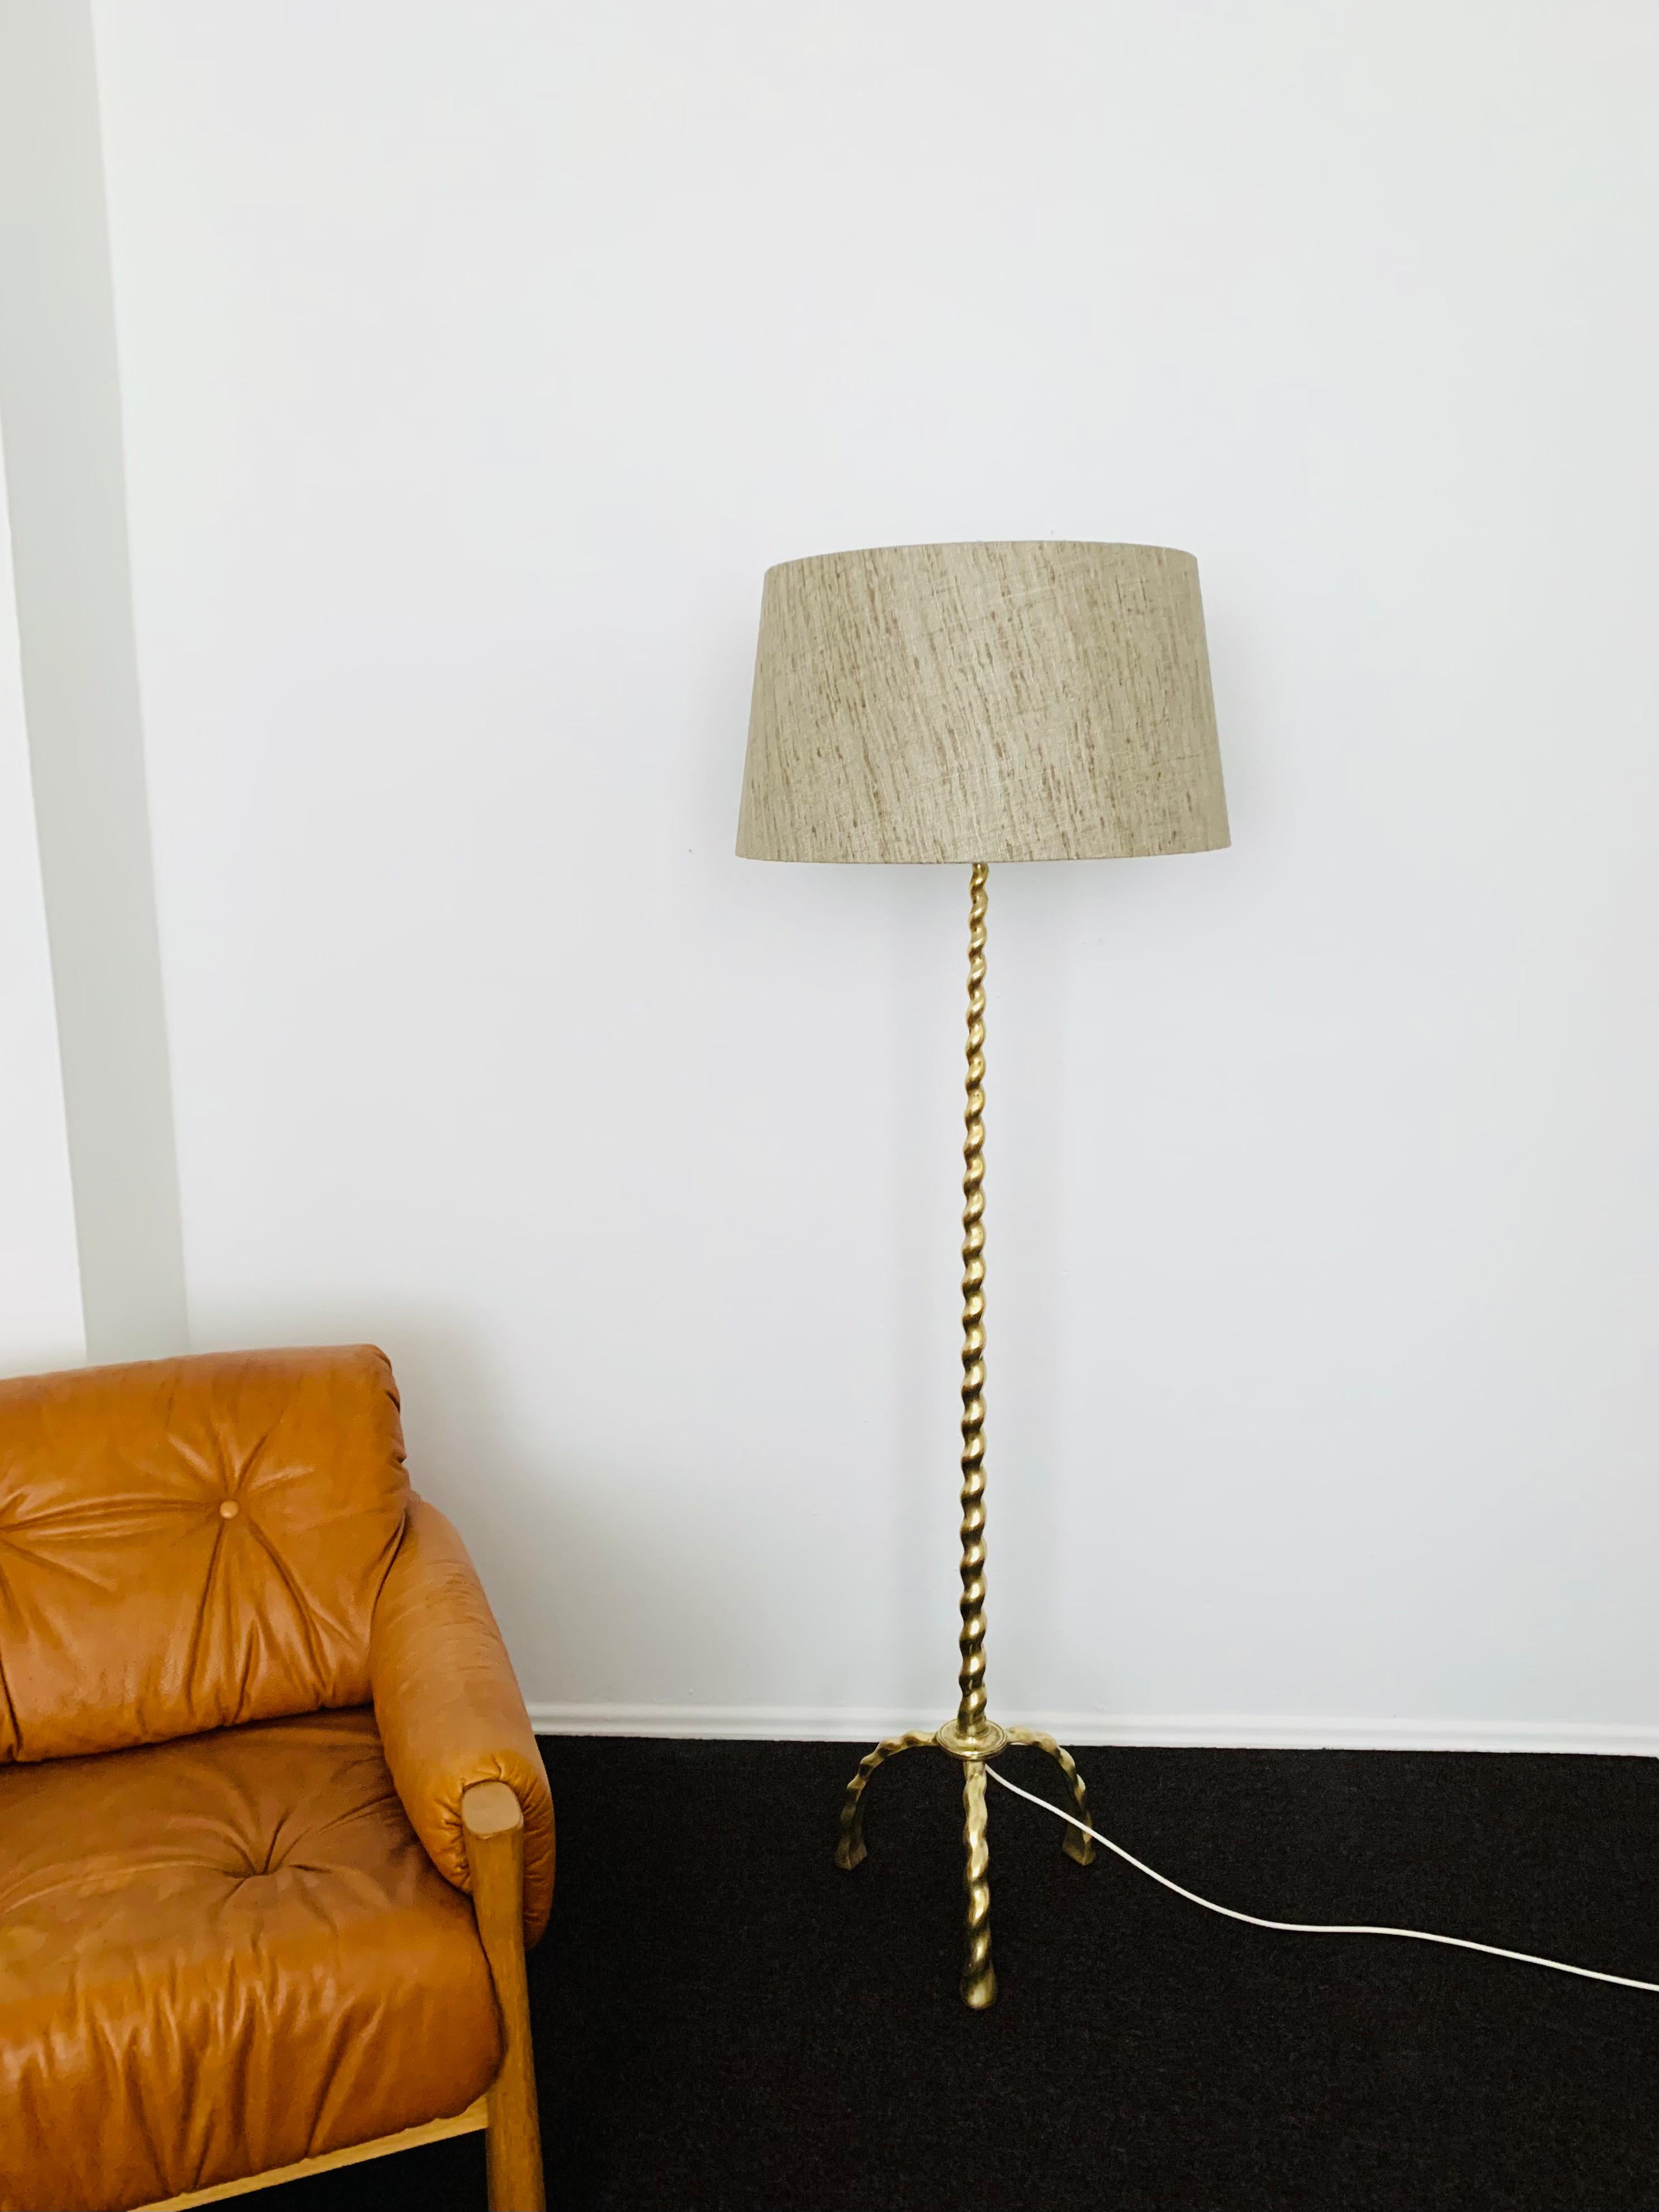 Brass Floor Lamp In Good Condition For Sale In München, DE